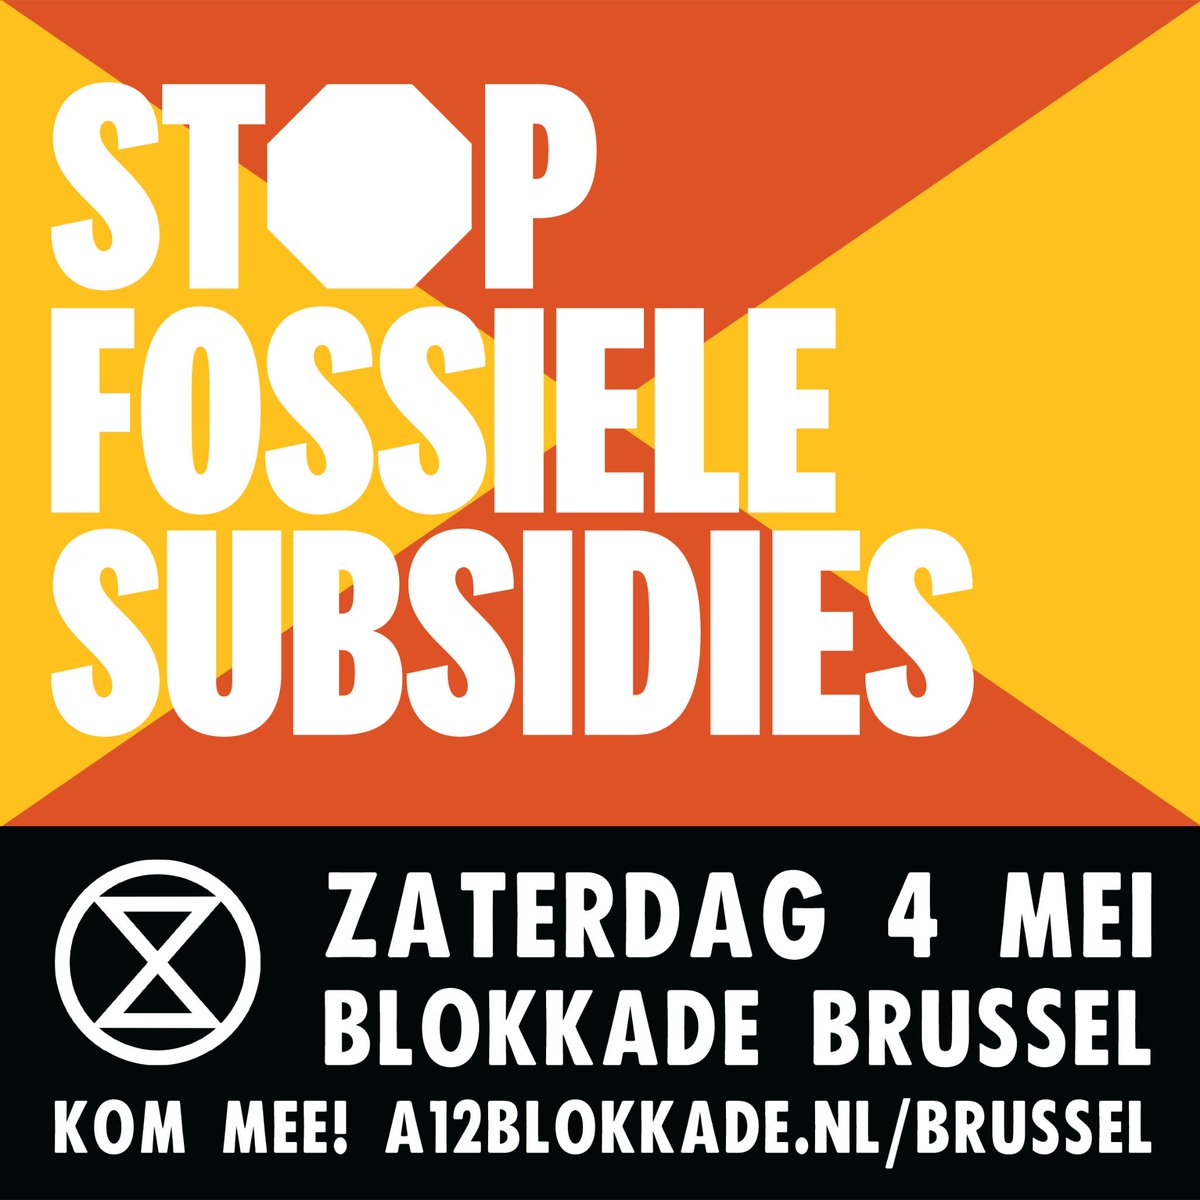 Over 5 dagen, op 4 mei, blokkeren we samen met @XR_Belgium een grote verkeersader in Brussel. De NL overheid blijft zich in de afbouwplannen voor de fossiele subsidies verschuilen achter niet bestaande Europese afspraken om deze af te schaffen. Aanmelding: a12blokkade.nl/brussel